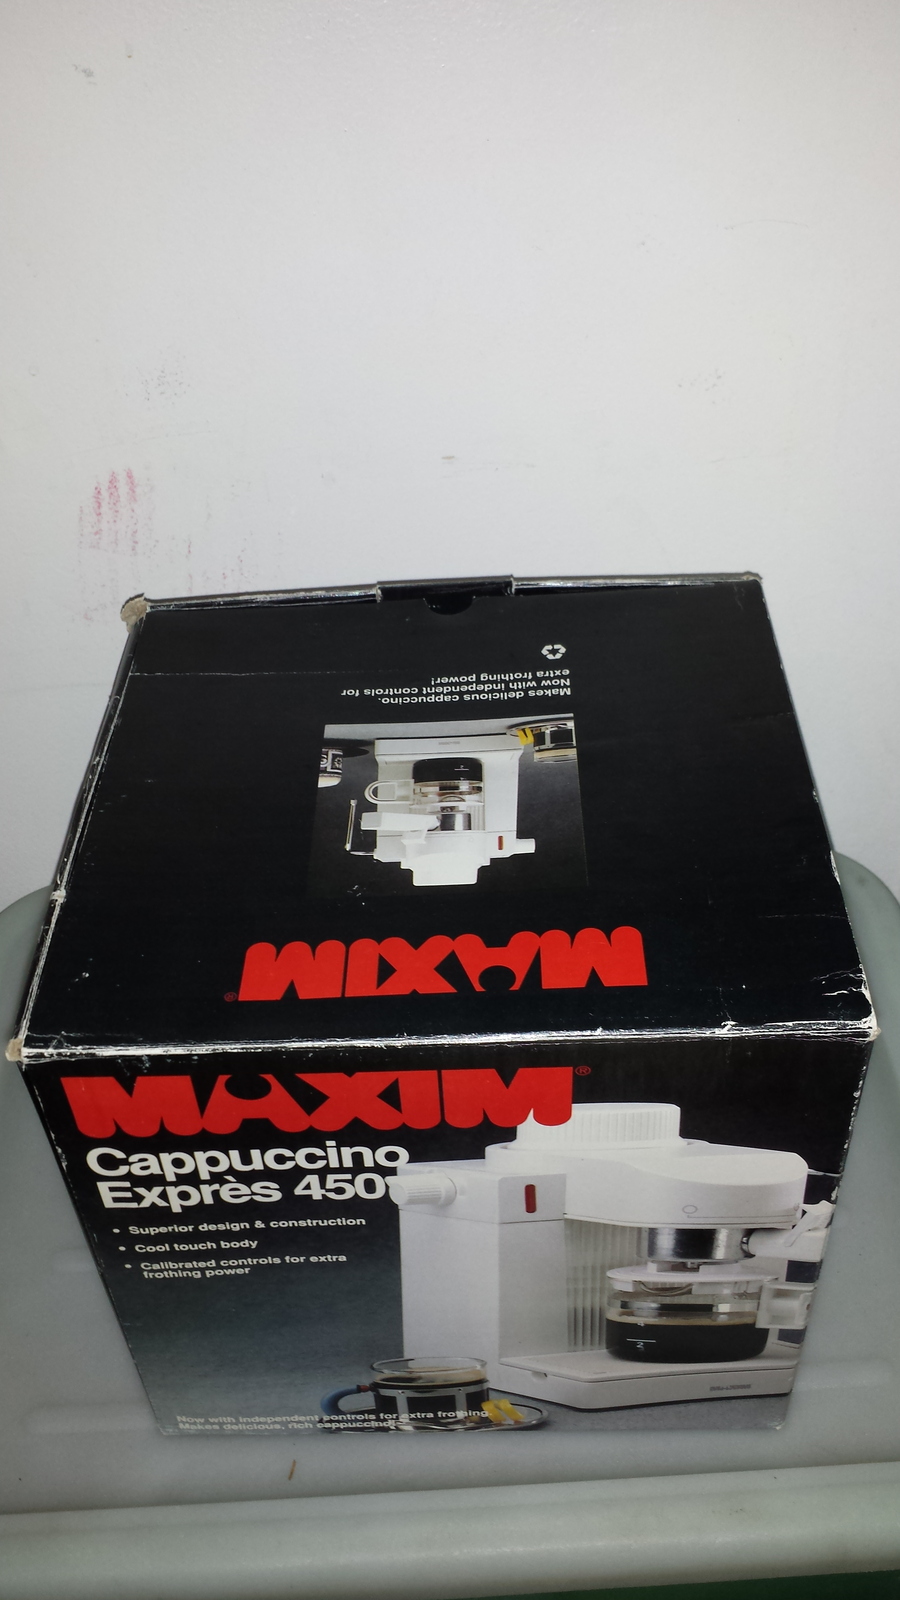 Maxim Cappuccino Expres 450 - $73.00